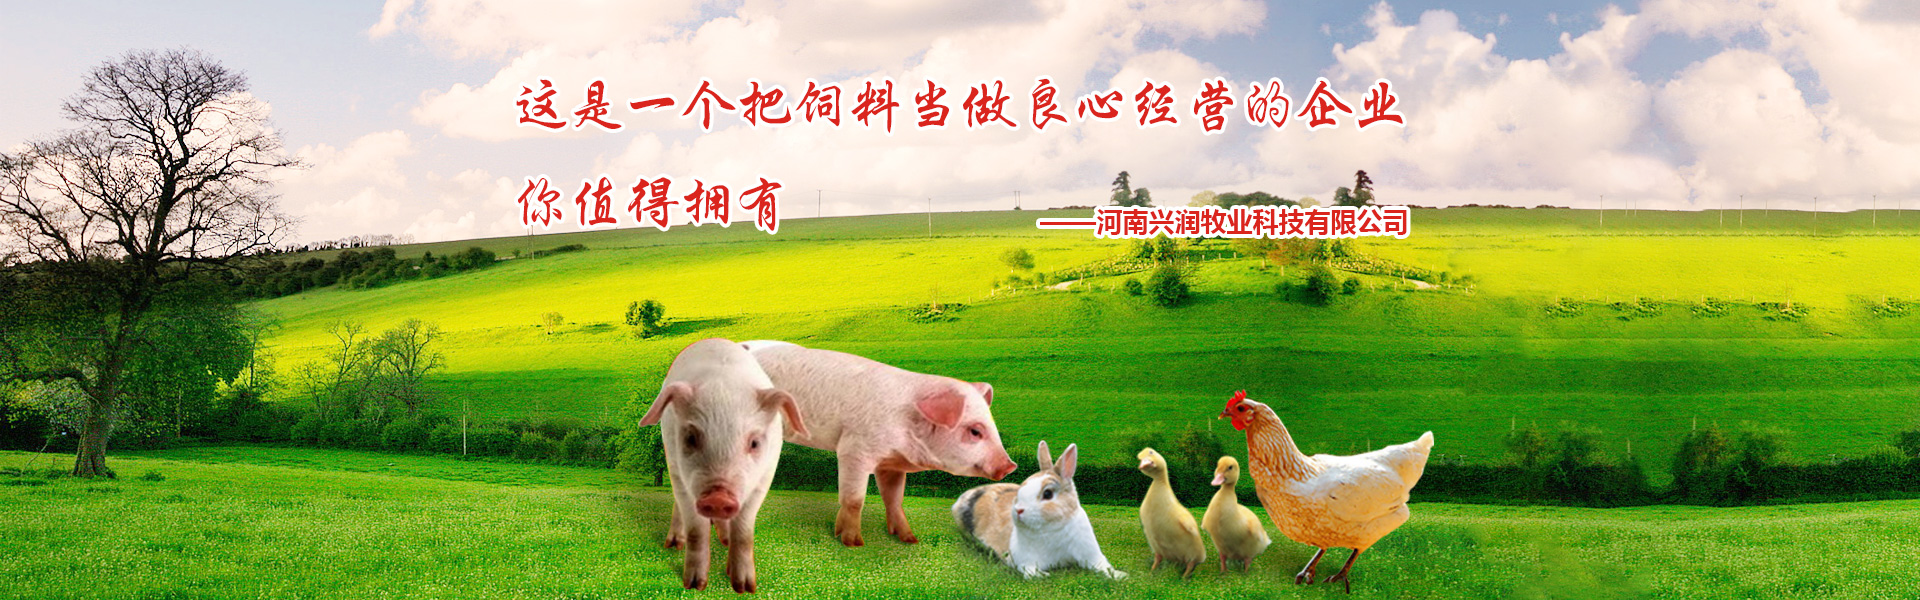 河南猪饲料厂家,猪饲料厂家,河南猪饲料